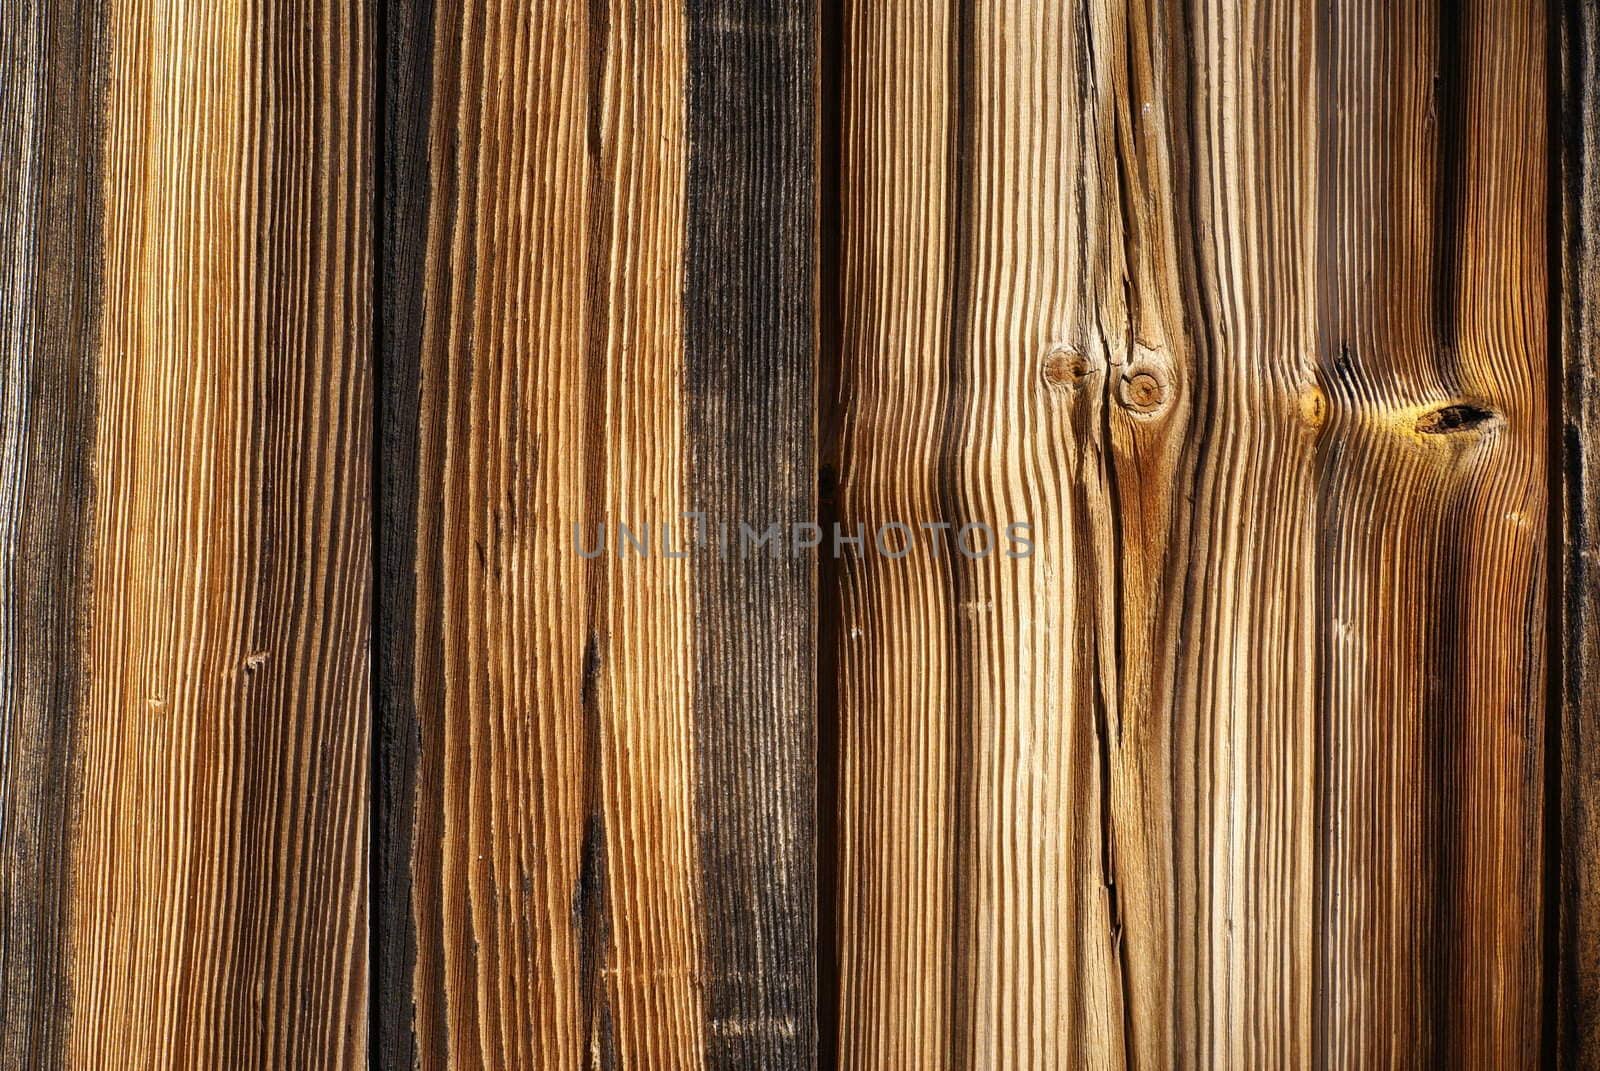 Interesting wood background.